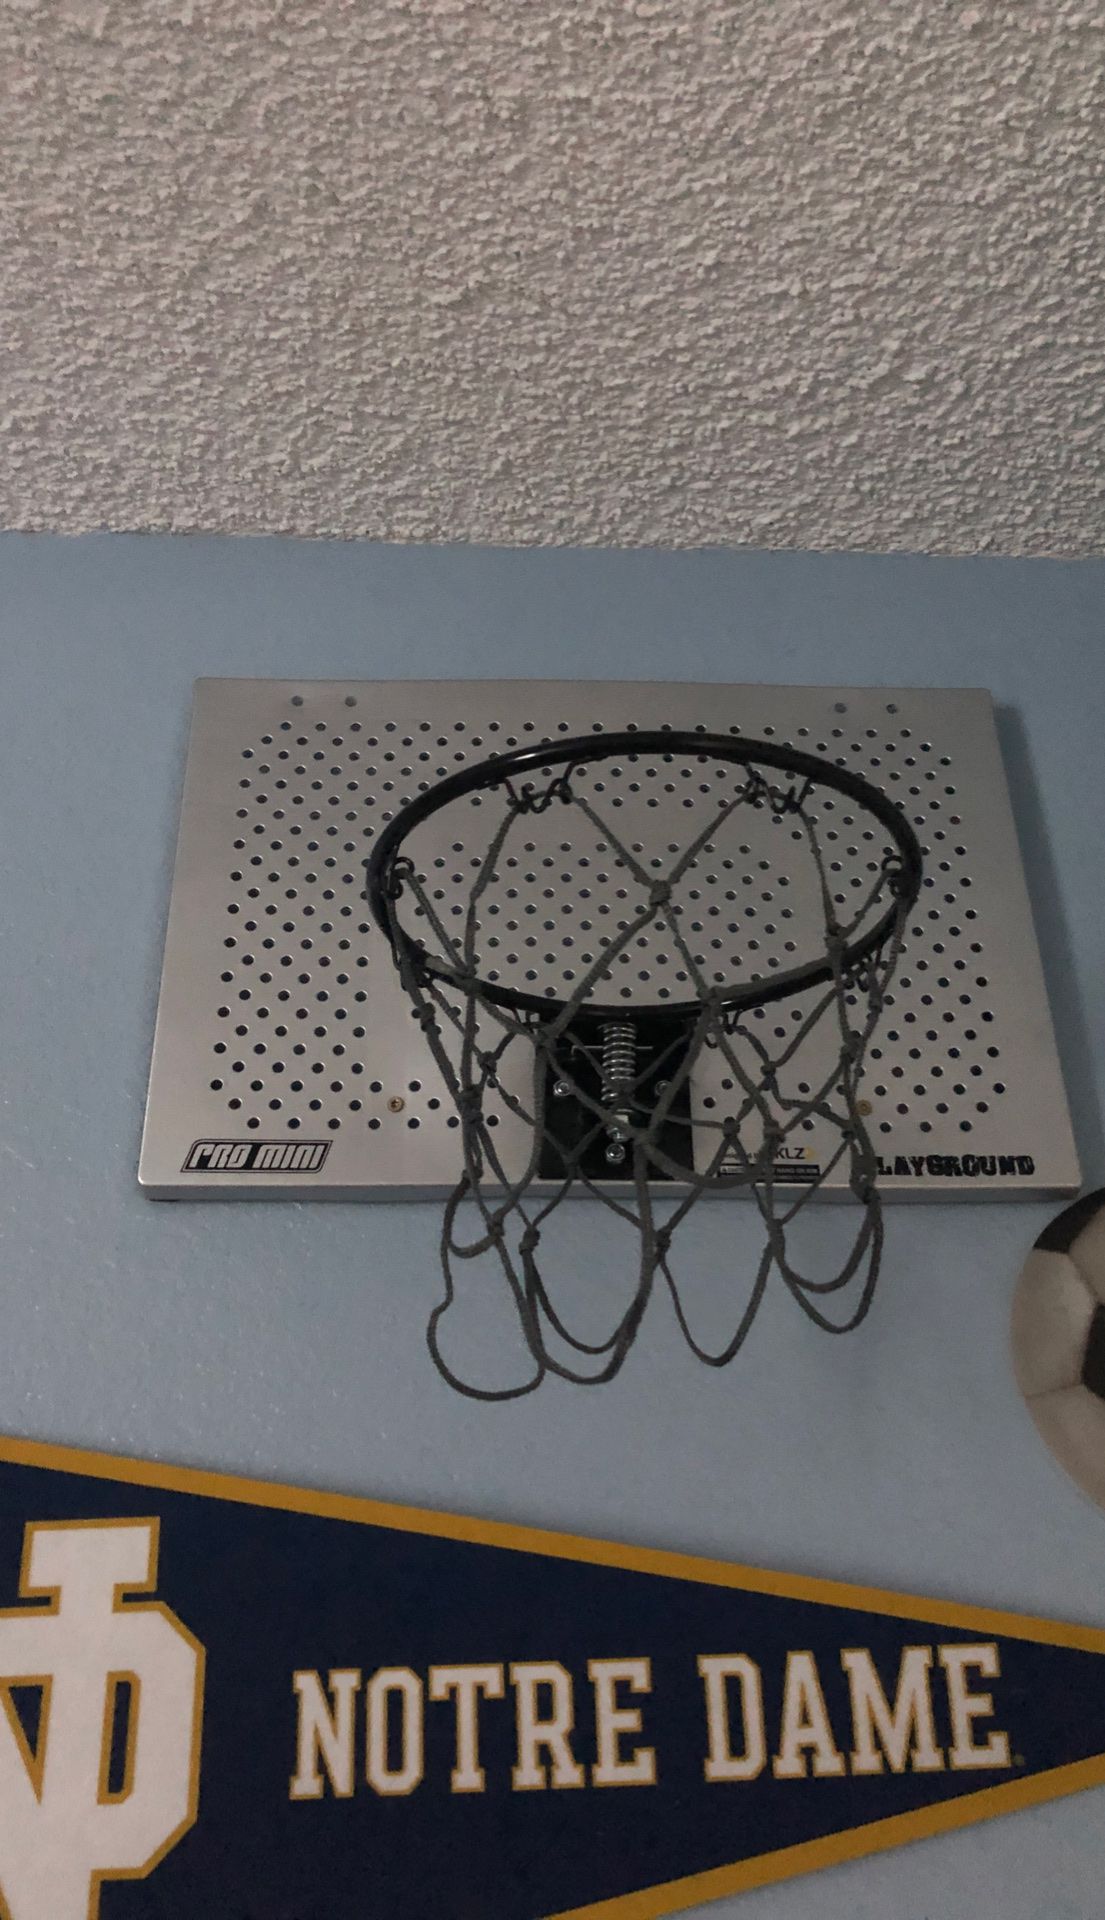 Basketball 🏀 Hoop heavy Duty indoor like new